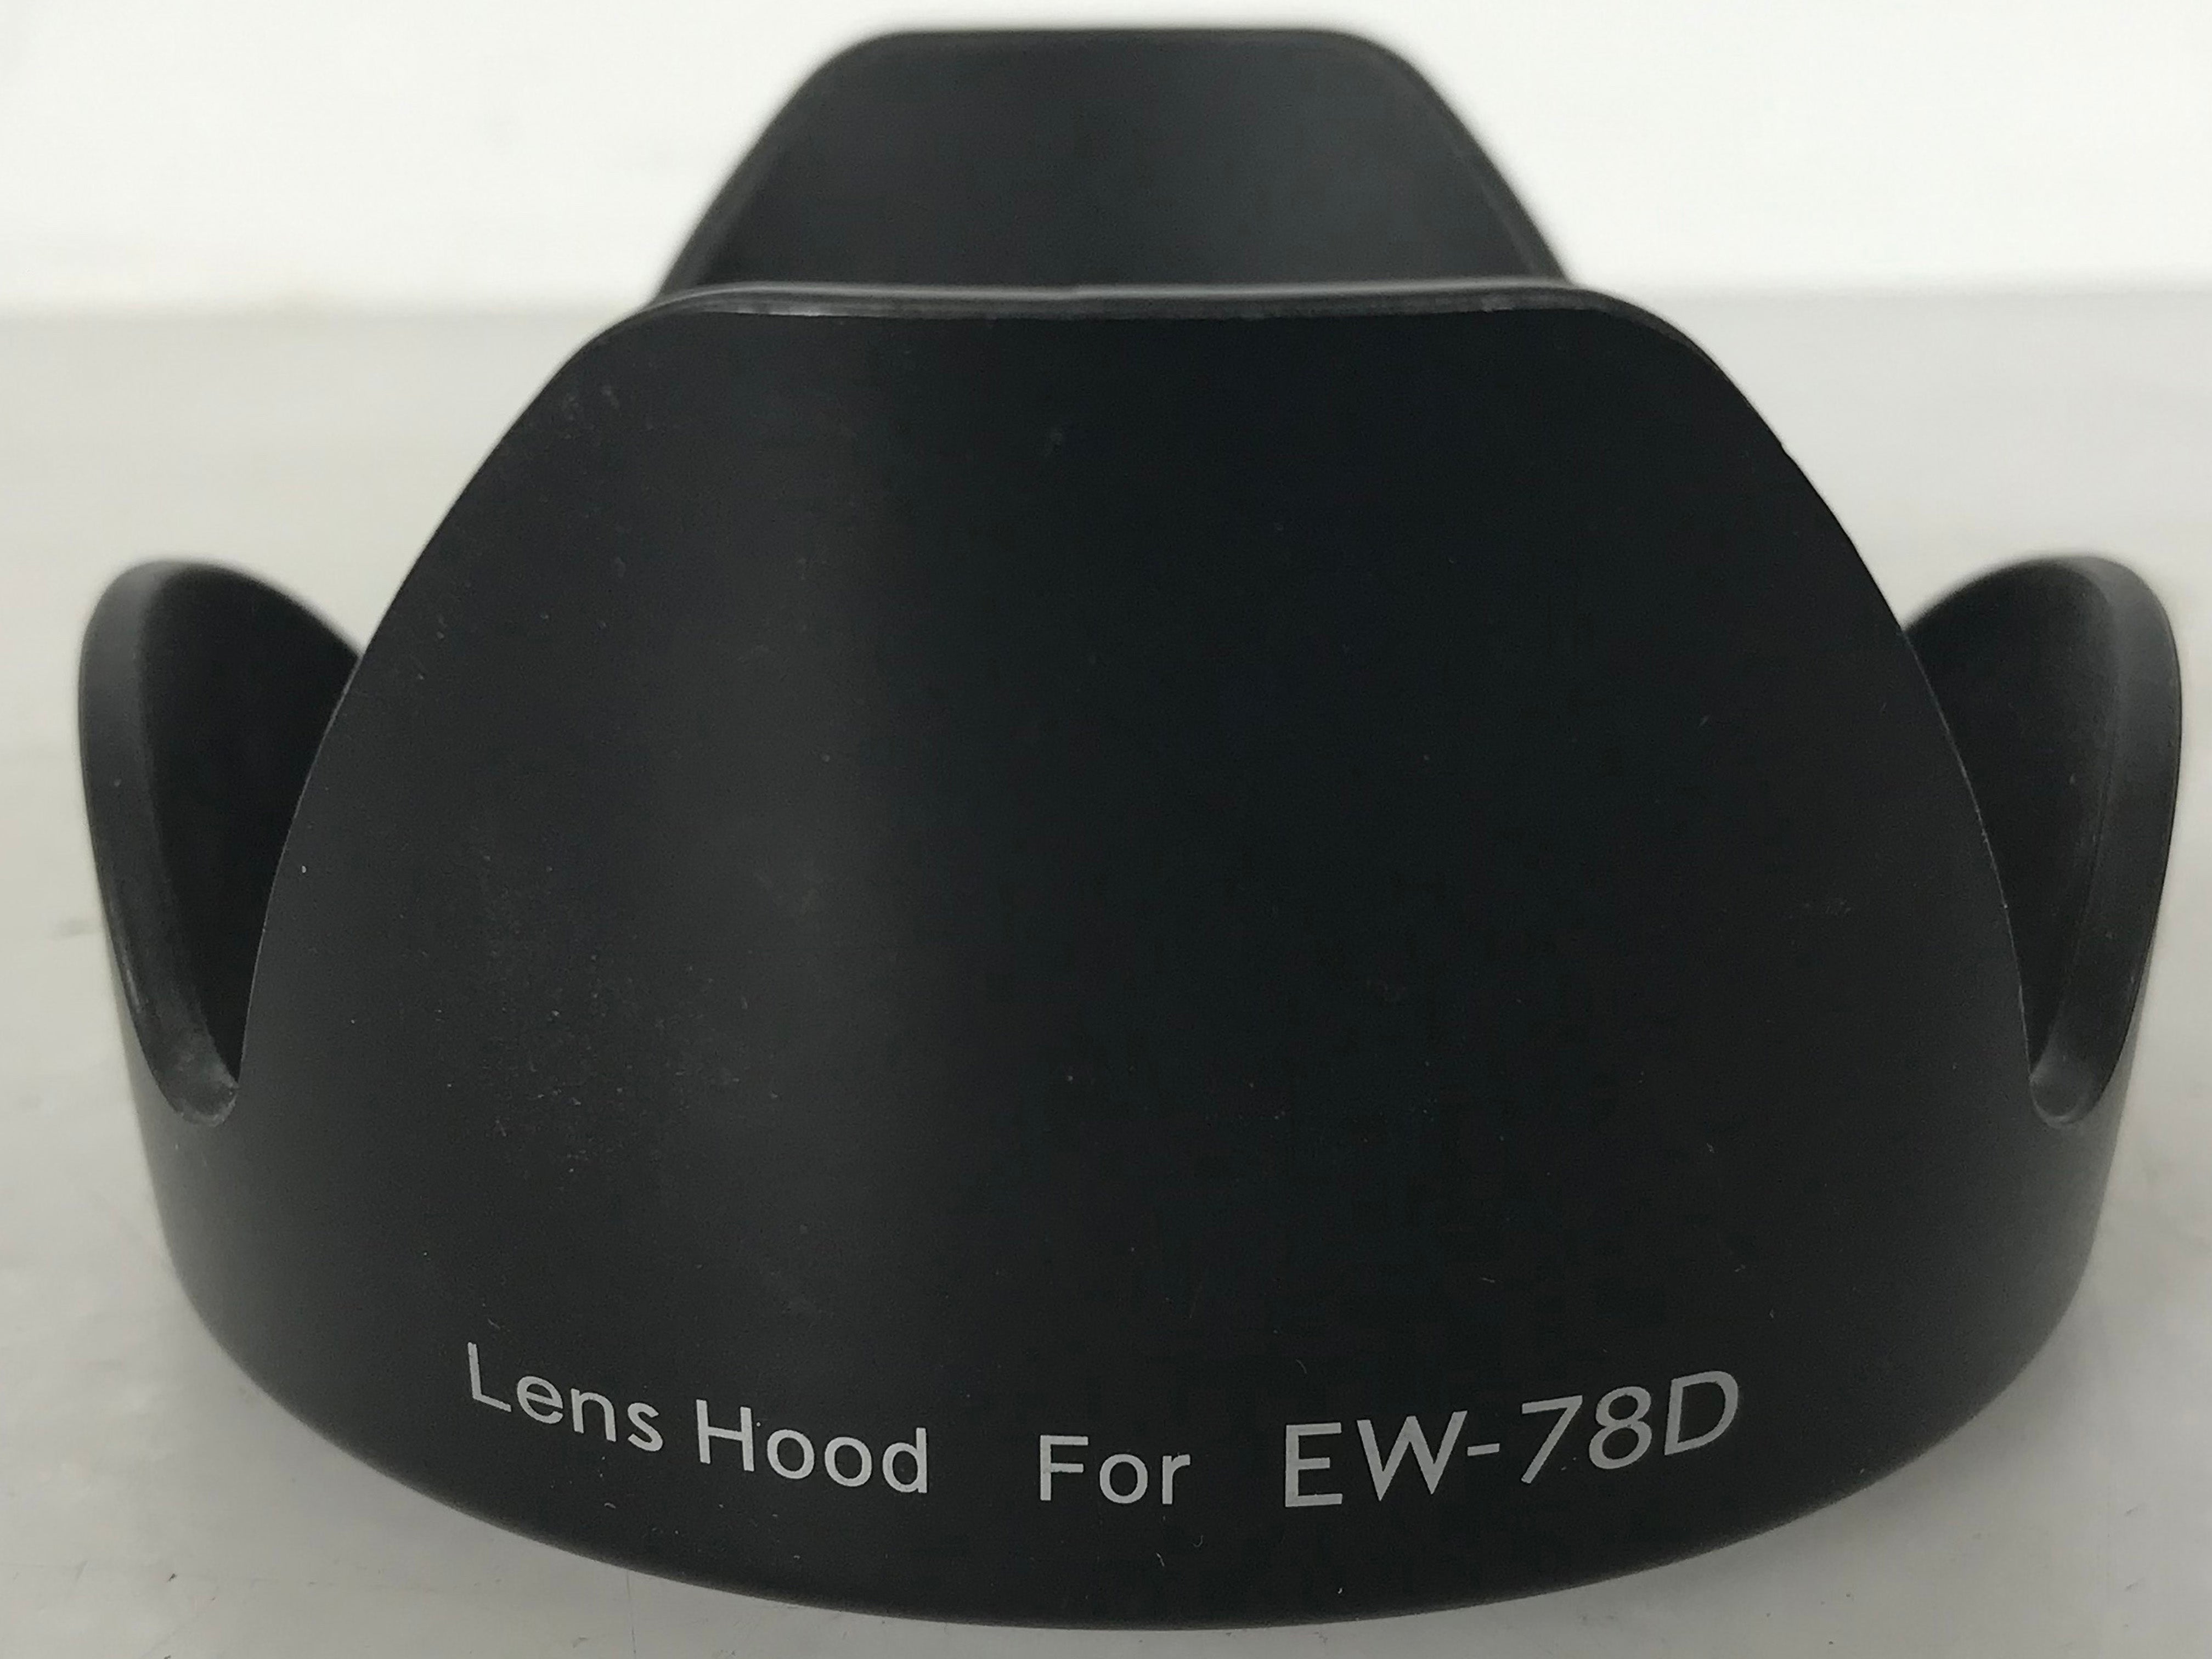 Canon EW-78D Lens Hood for EF 28-200mm f/3.5-5.6 and EF-S 18-200mm f/3.5-5.6 IS Lenses